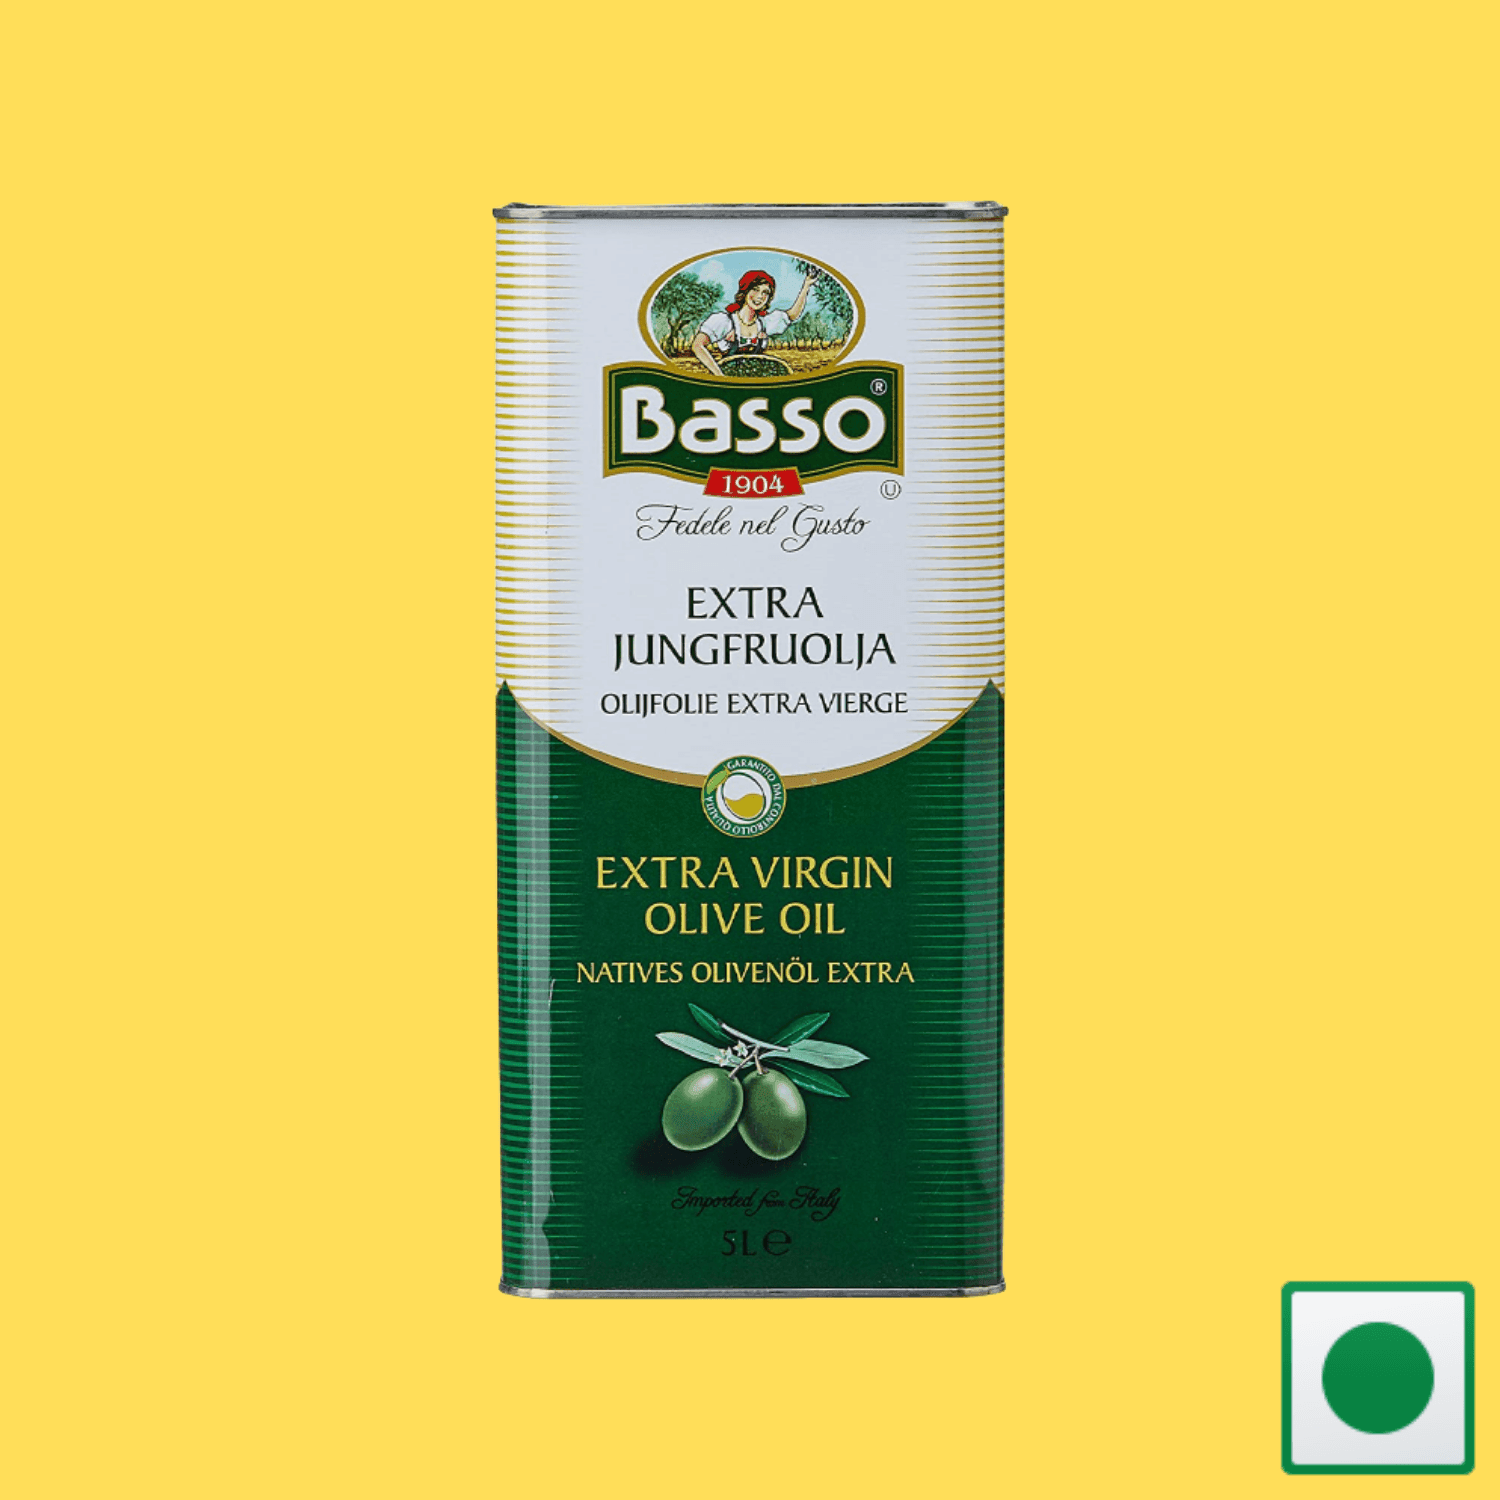 Basso Olive Oil Extra Virgin, 5L (Imported) - Super 7 Mart